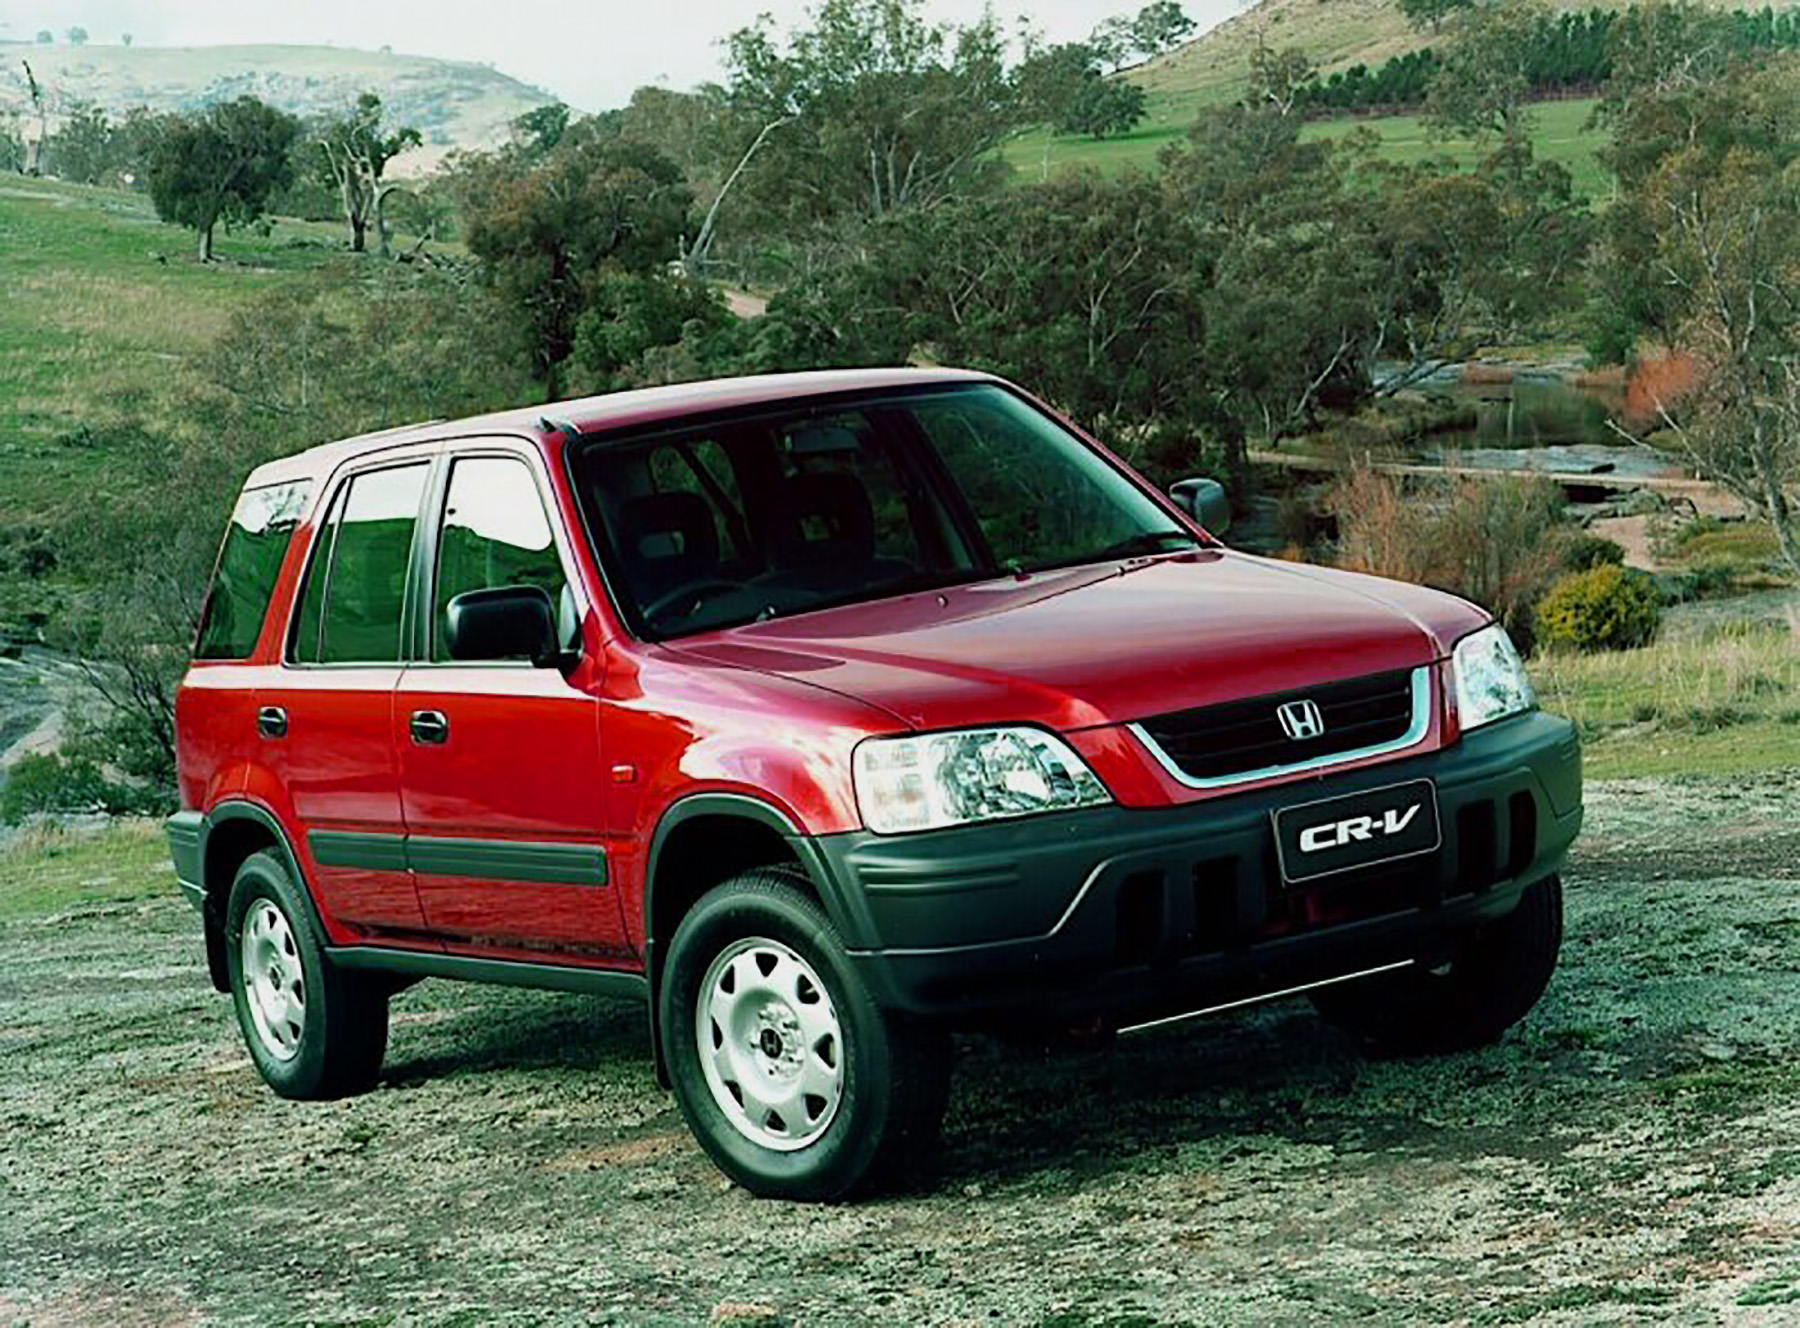 Honda cr v rd 1. Honda CRV 1997. Honda CRV rd1. Honda CR-V rd1 1997. Honda CRV 1.